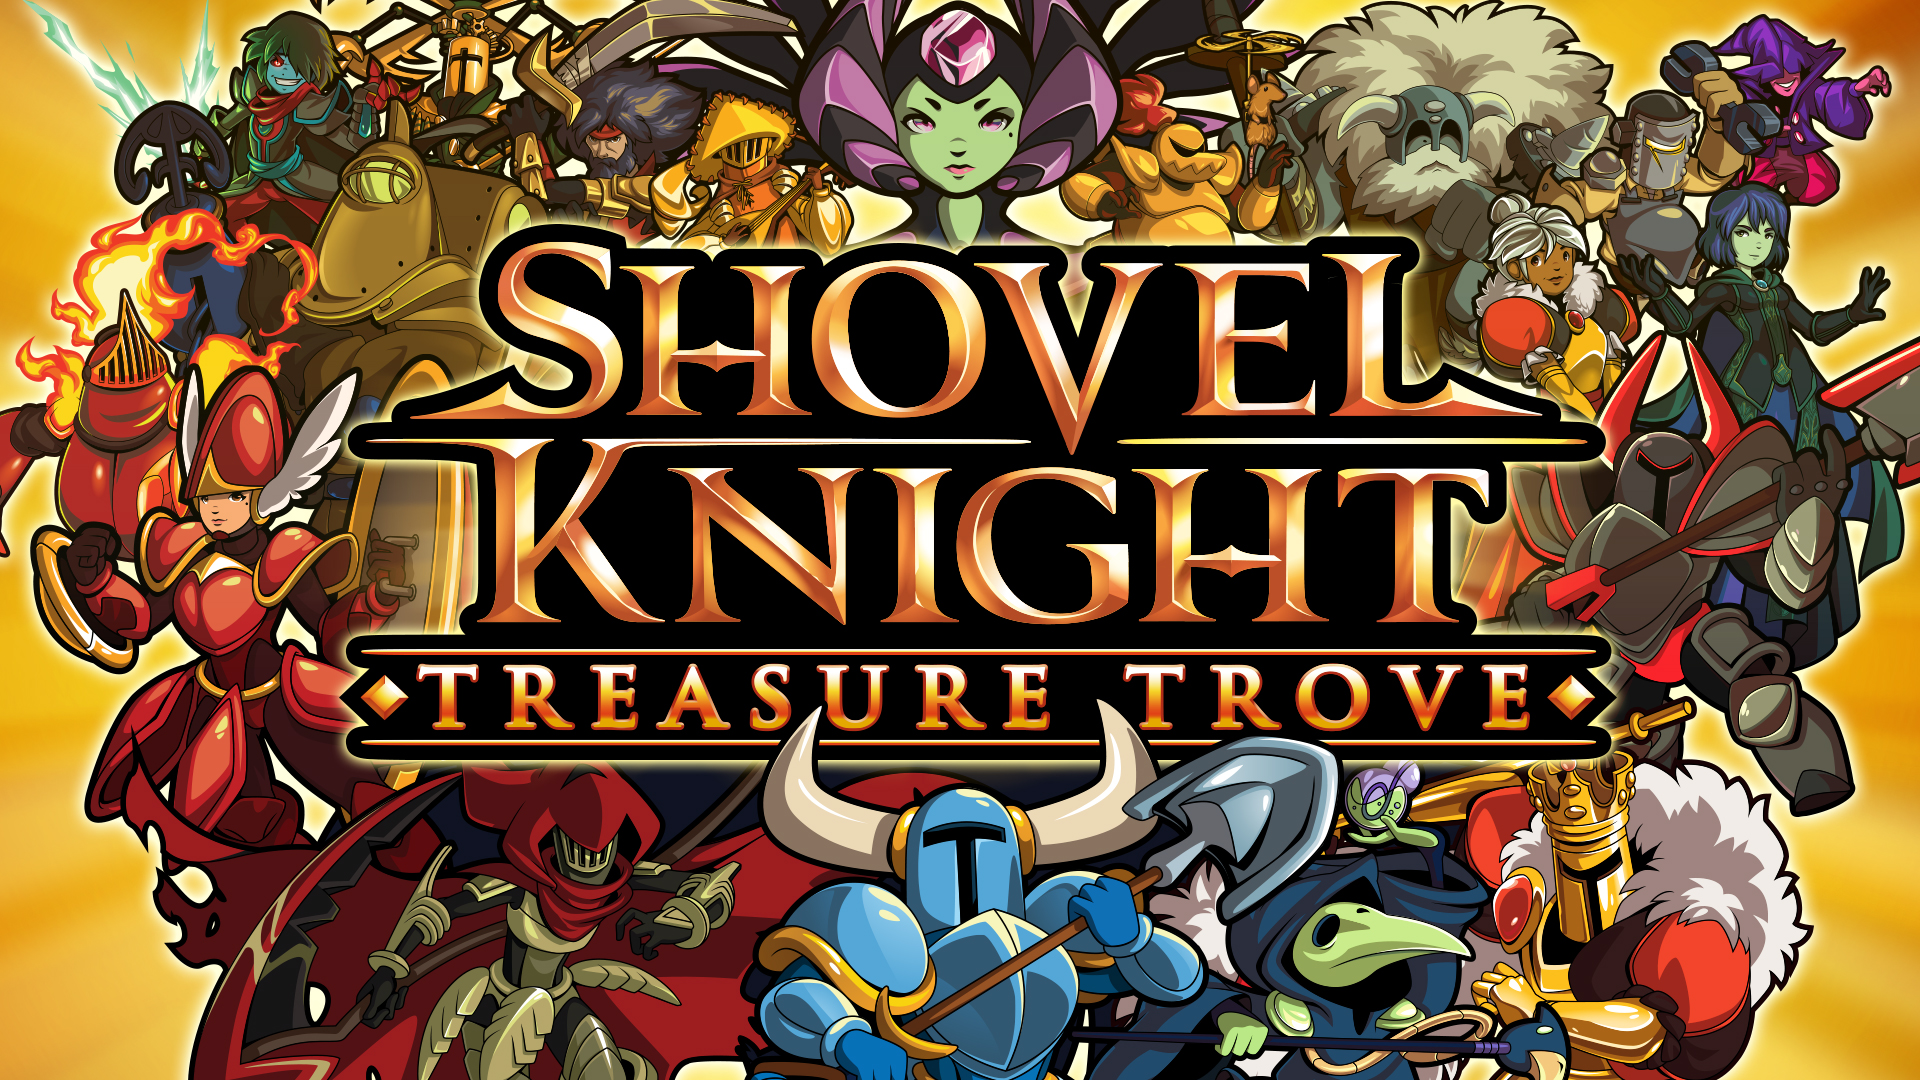 download shovel knight treasure trove mac for free